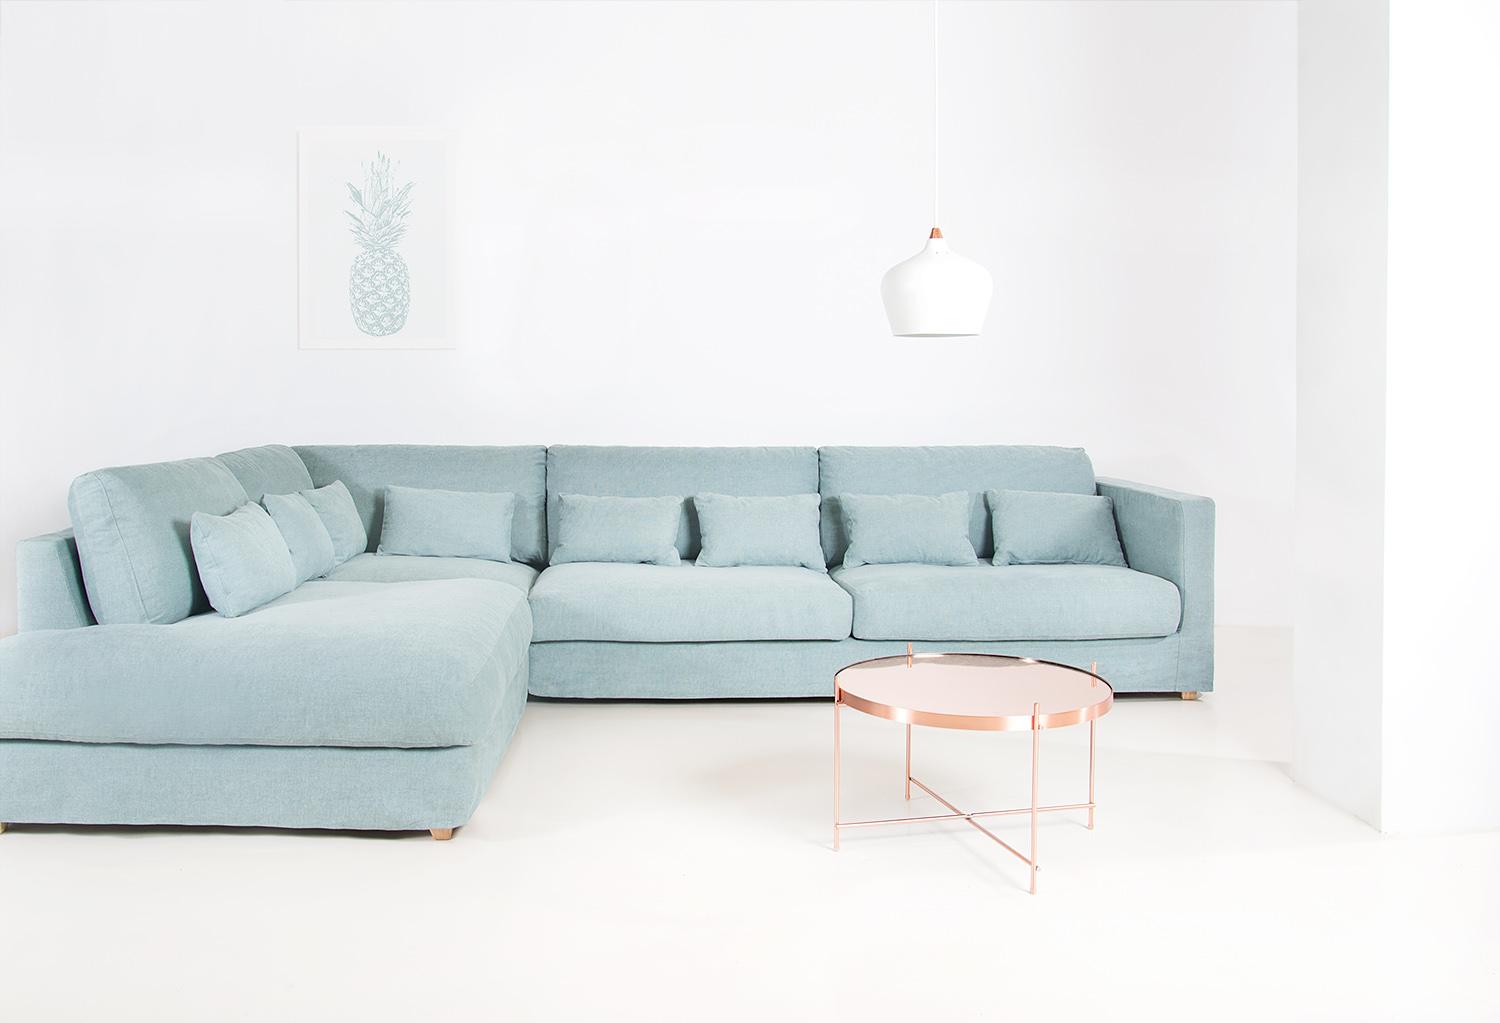 Modernes Designer-Sofa "Brøgger" #sofa #minimalistisch #skandinavischesdesign ©Von Wilmowsky